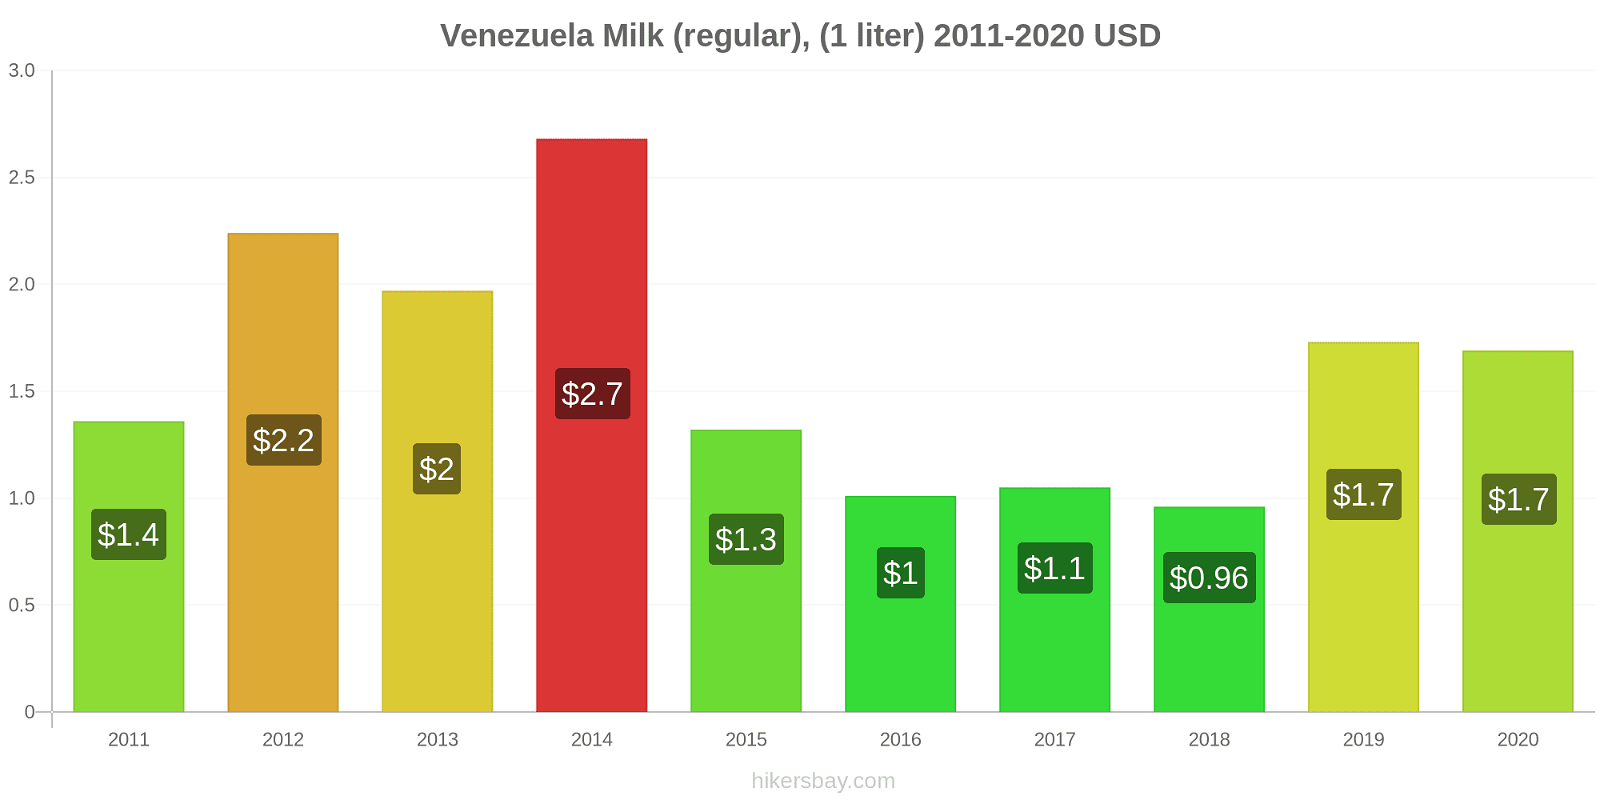 Venezuela price changes Milk (regular), (1 liter) hikersbay.com